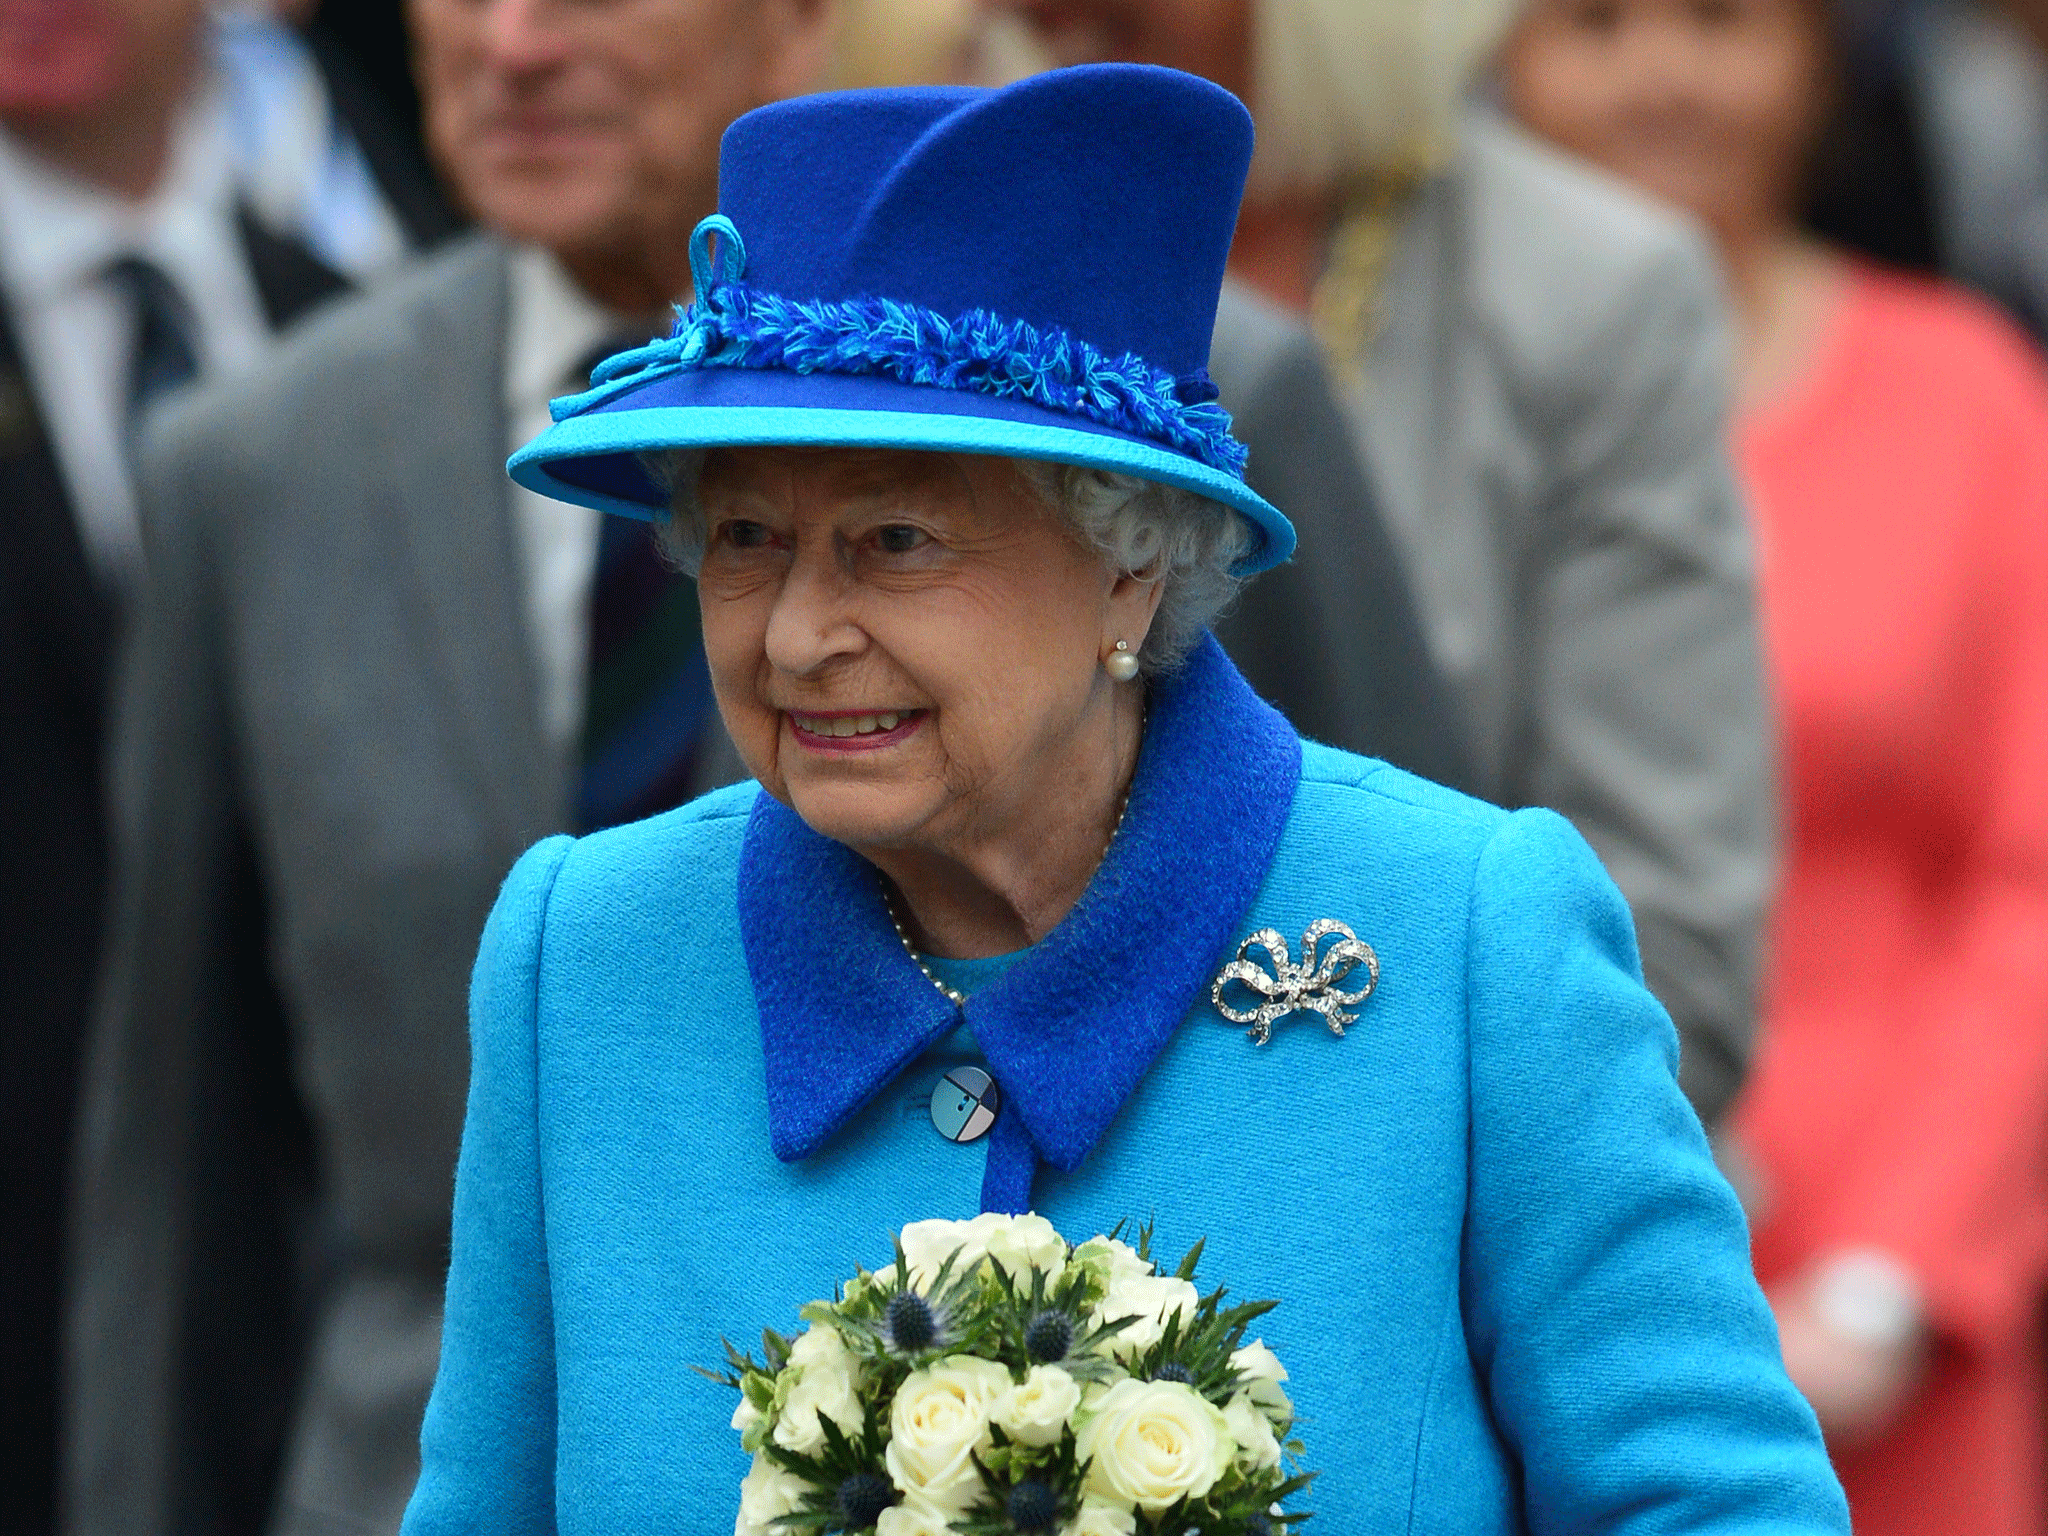 Queen Elizabeth II becomes the UK's longest reigning monarch on Wednesday